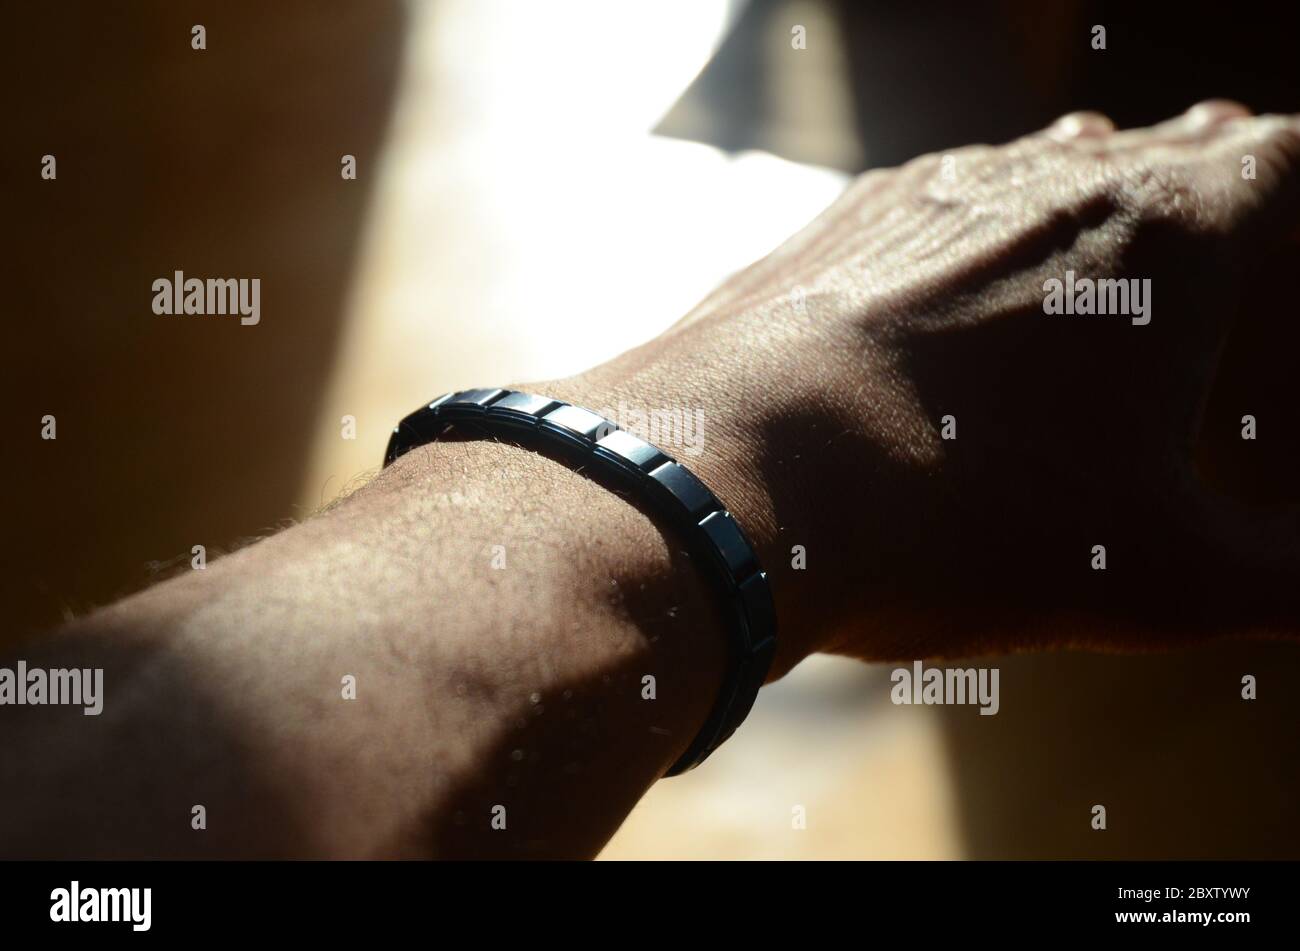 DÉPLACEMENT POLAIRE : un homme exerce son poignet à l'aide d'un bracelet magnétique contenant des pierres tourmaline pour augmenter la force. Banque D'Images